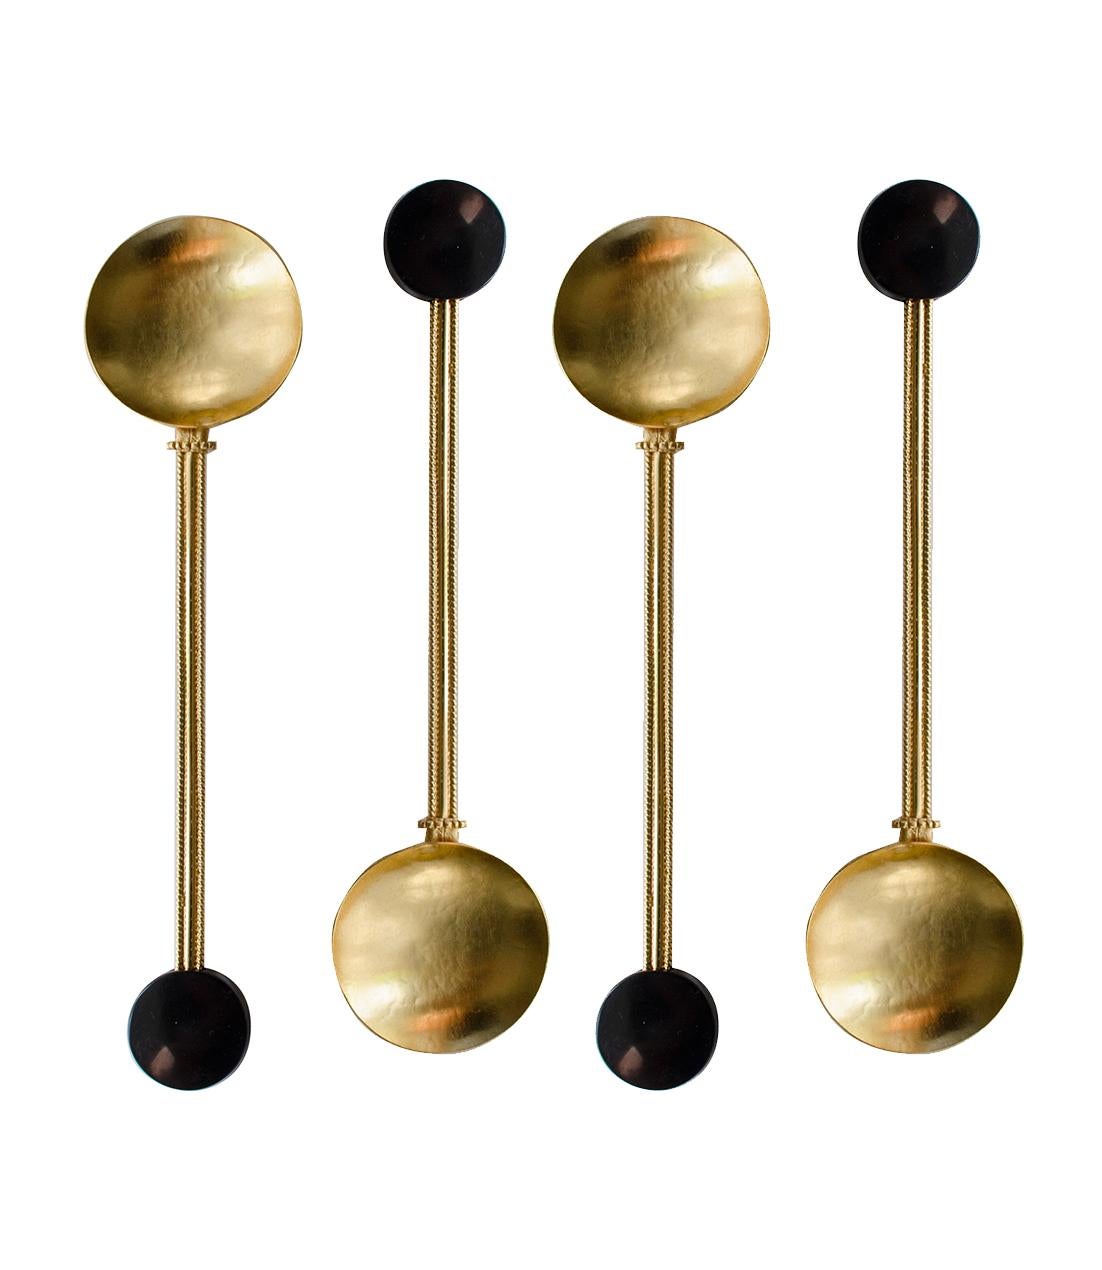 Metal Contemporary Gold Plated Spoon Server Set Onix Stone HandcraftedNatalia Criado